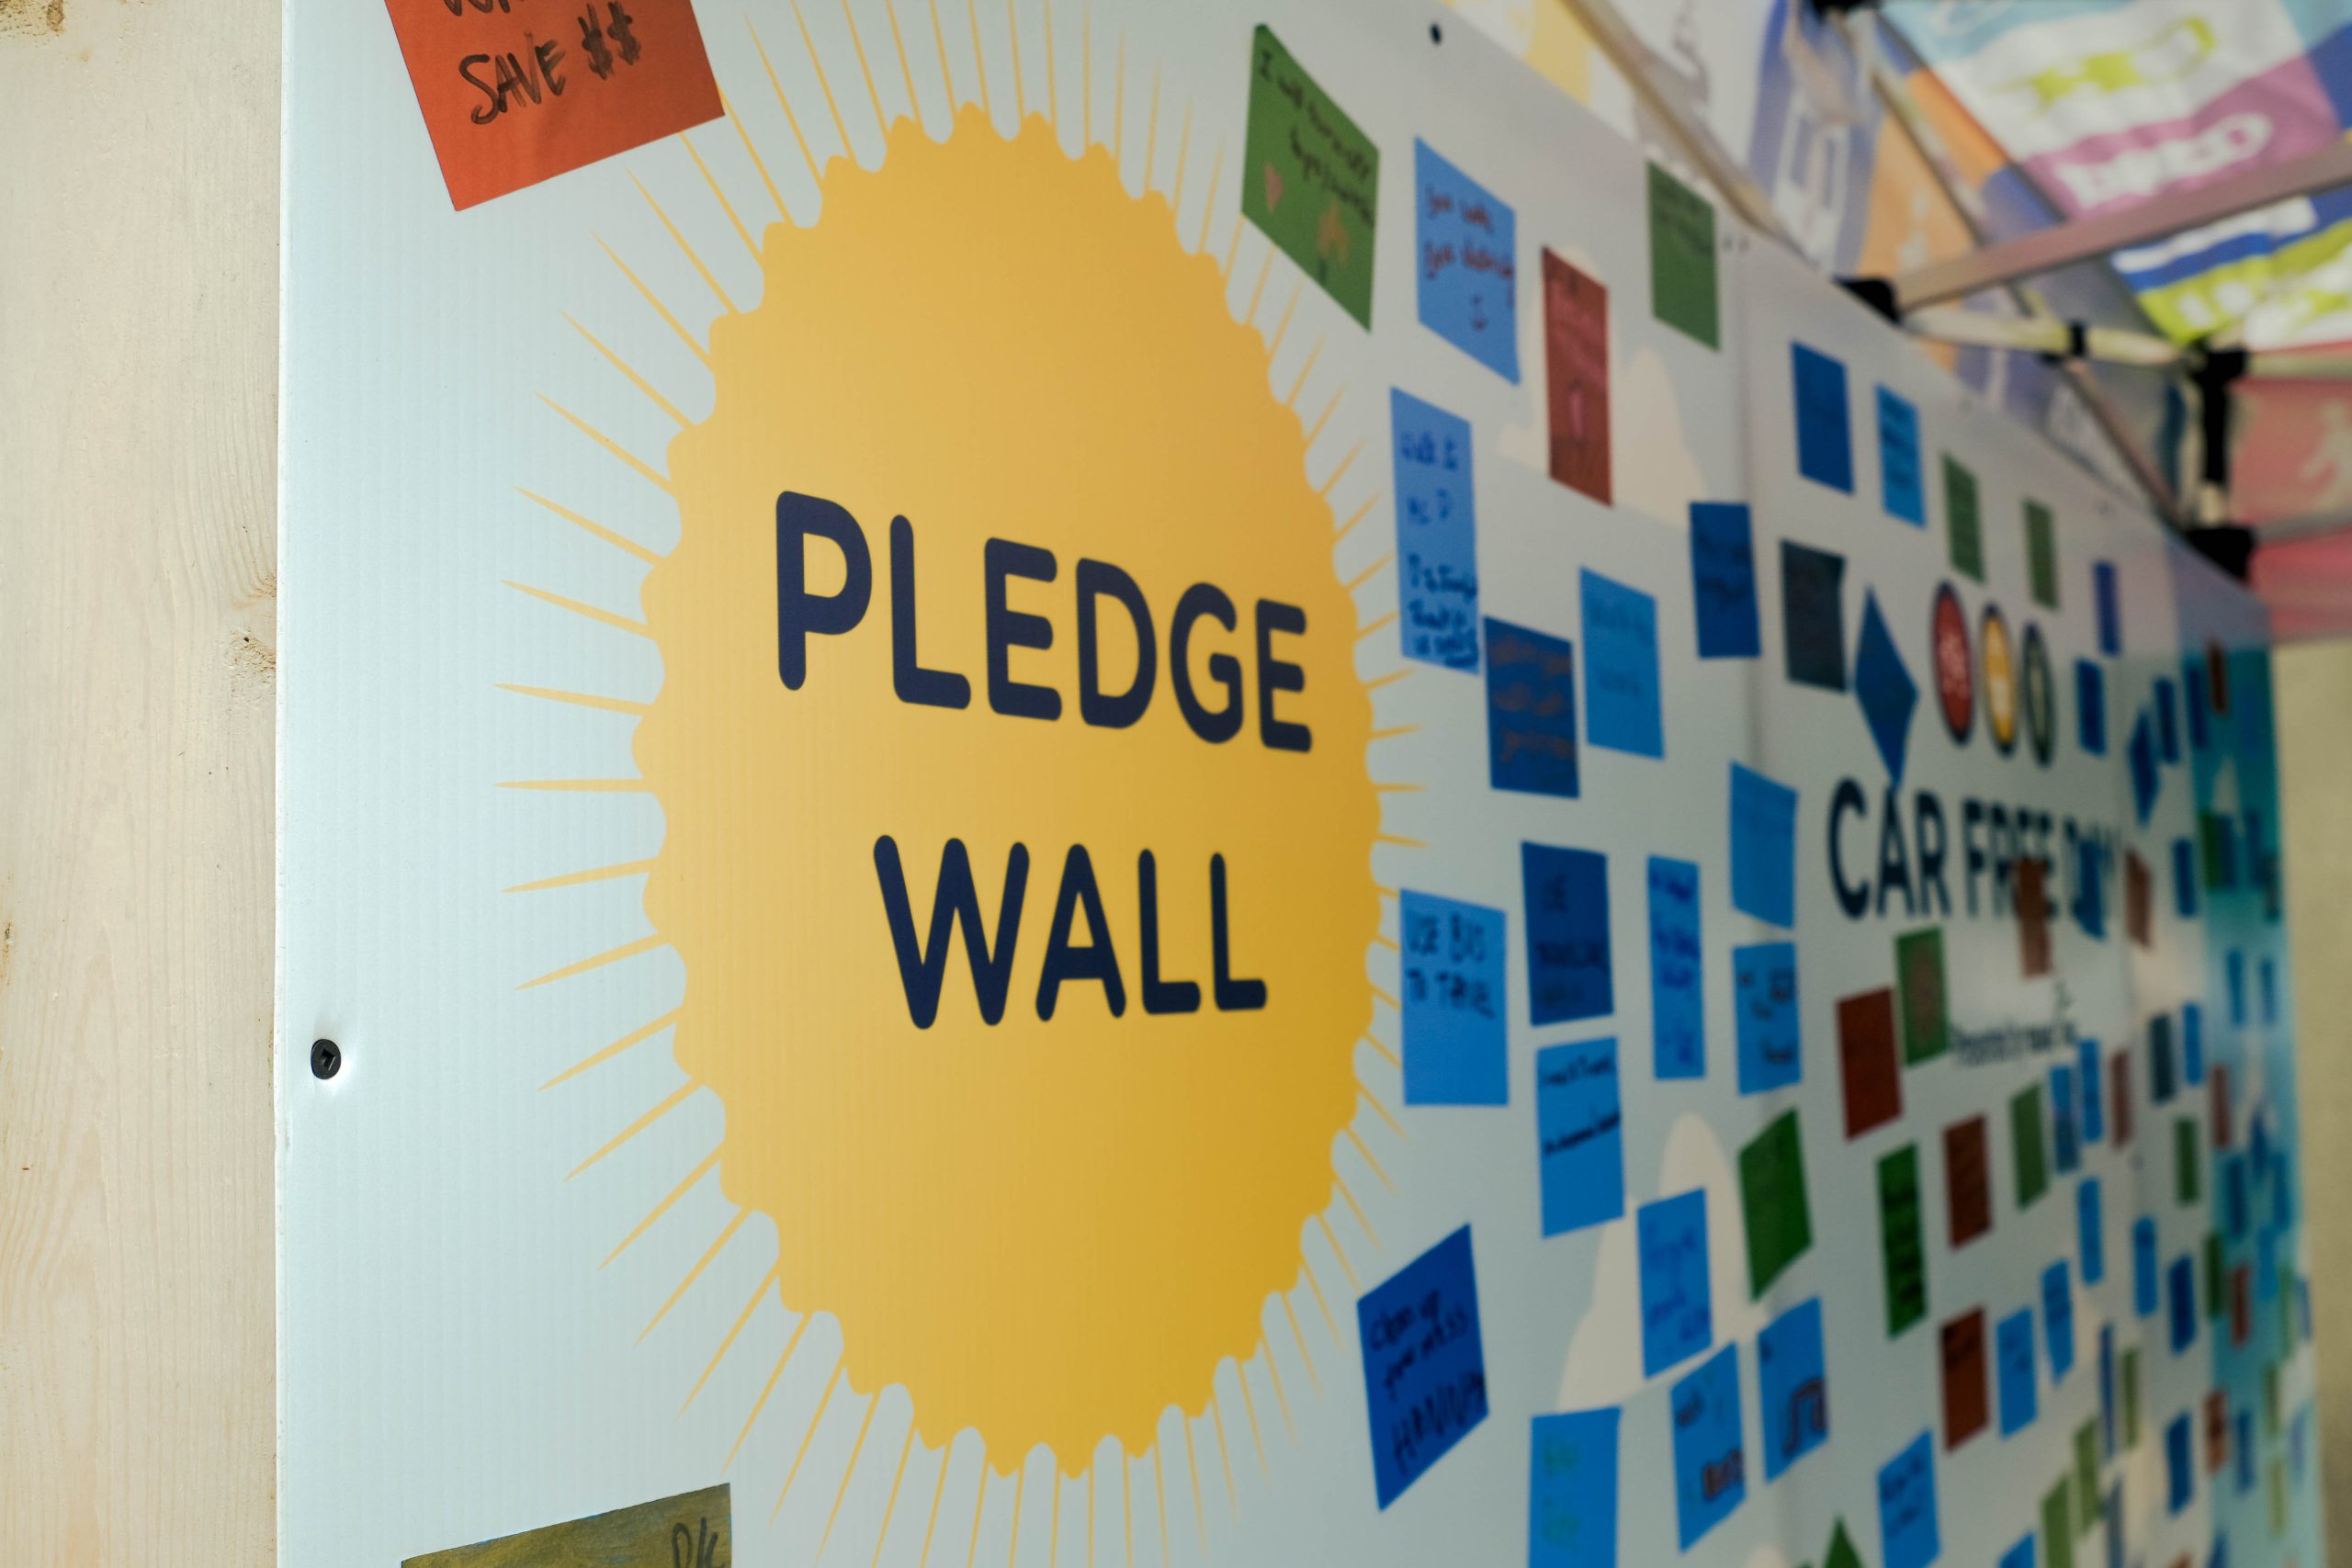 Car Free Day Pledge Wall